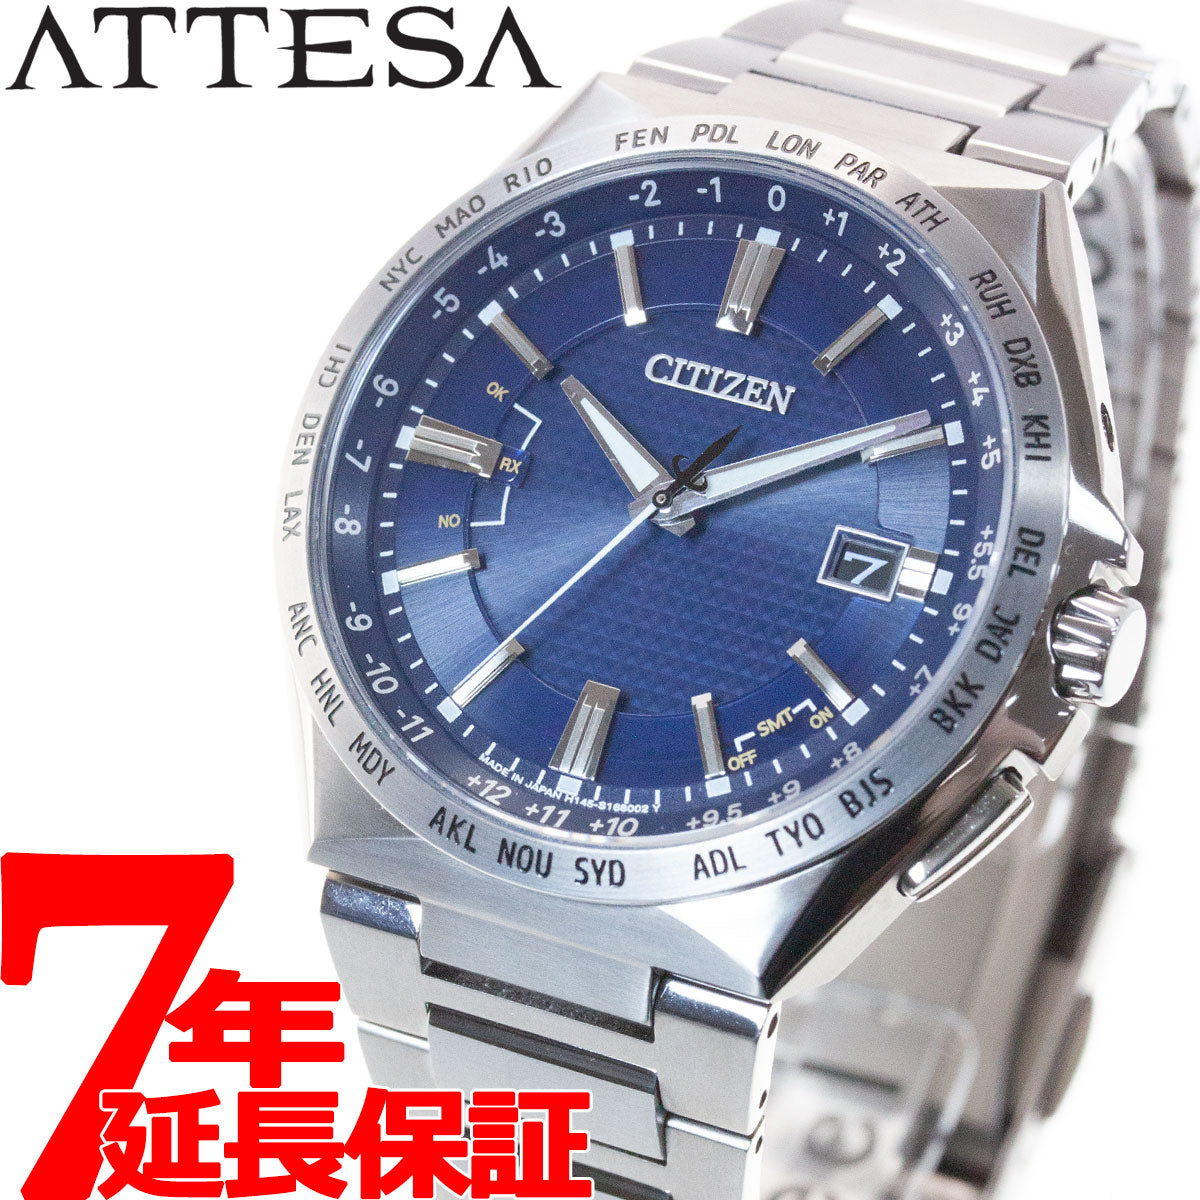 シチズン CITIZEN 腕時計 メンズ CB0210-54A アテッサ アクトライン エコ・ドライブ電波時計 ダイレクトフライト ATTESA ACT Line エコ・ドライブ電波（H145） シルバーxシルバー アナログ表示